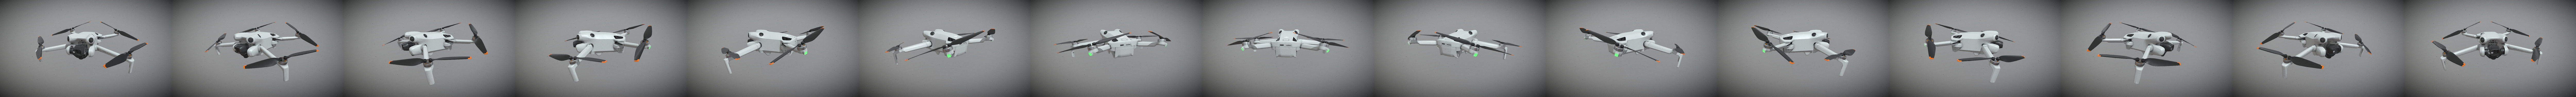 DJI MINI 4 PRO DRONE by DragonCNC, Download free STL model